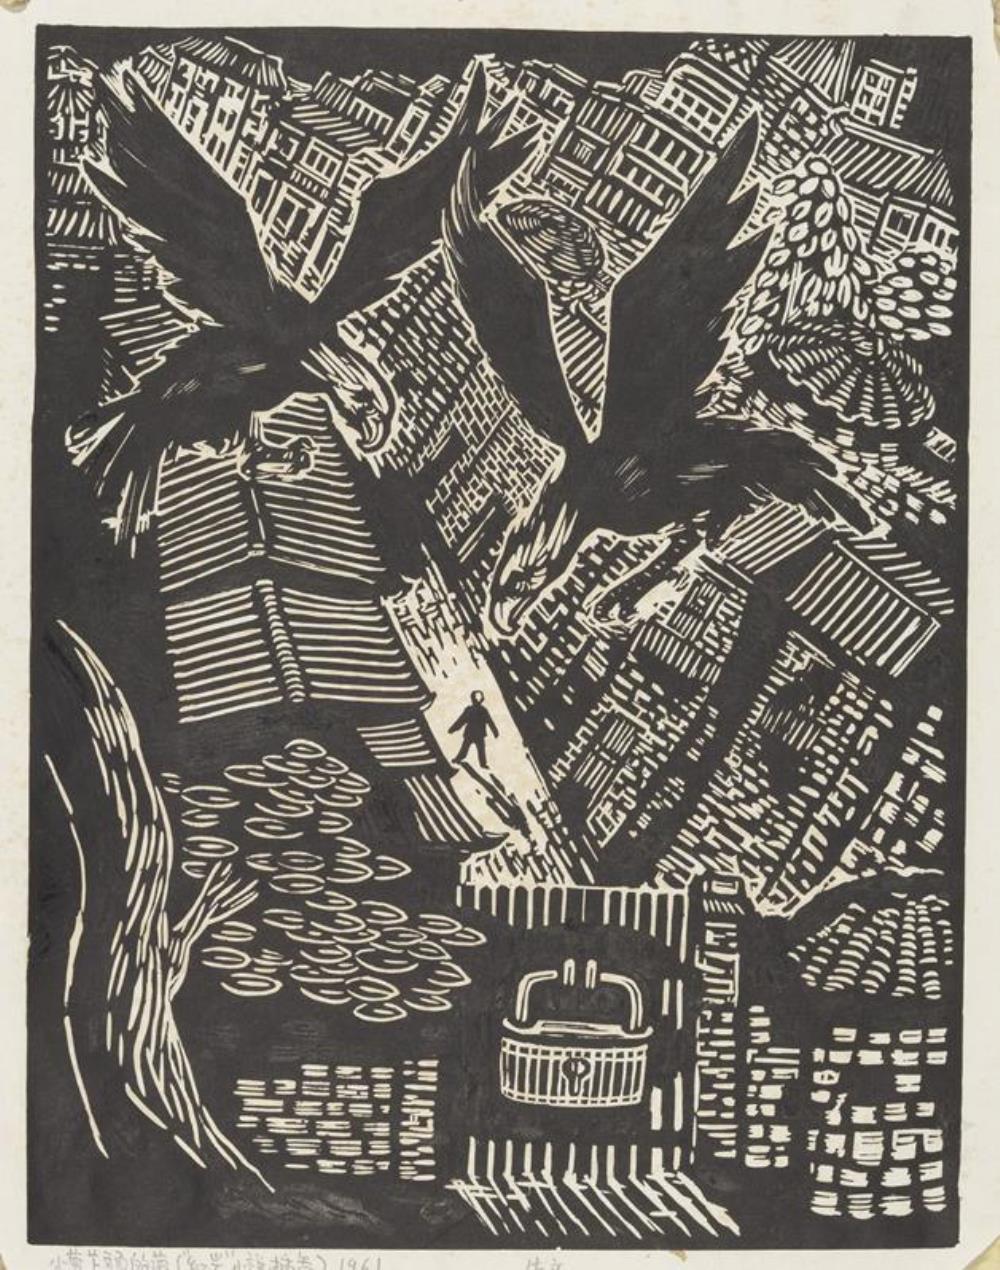 《小萝卜头的梦》作者：广廷渤创作年代：1961年规格：35.7×27.5cm品类：插画